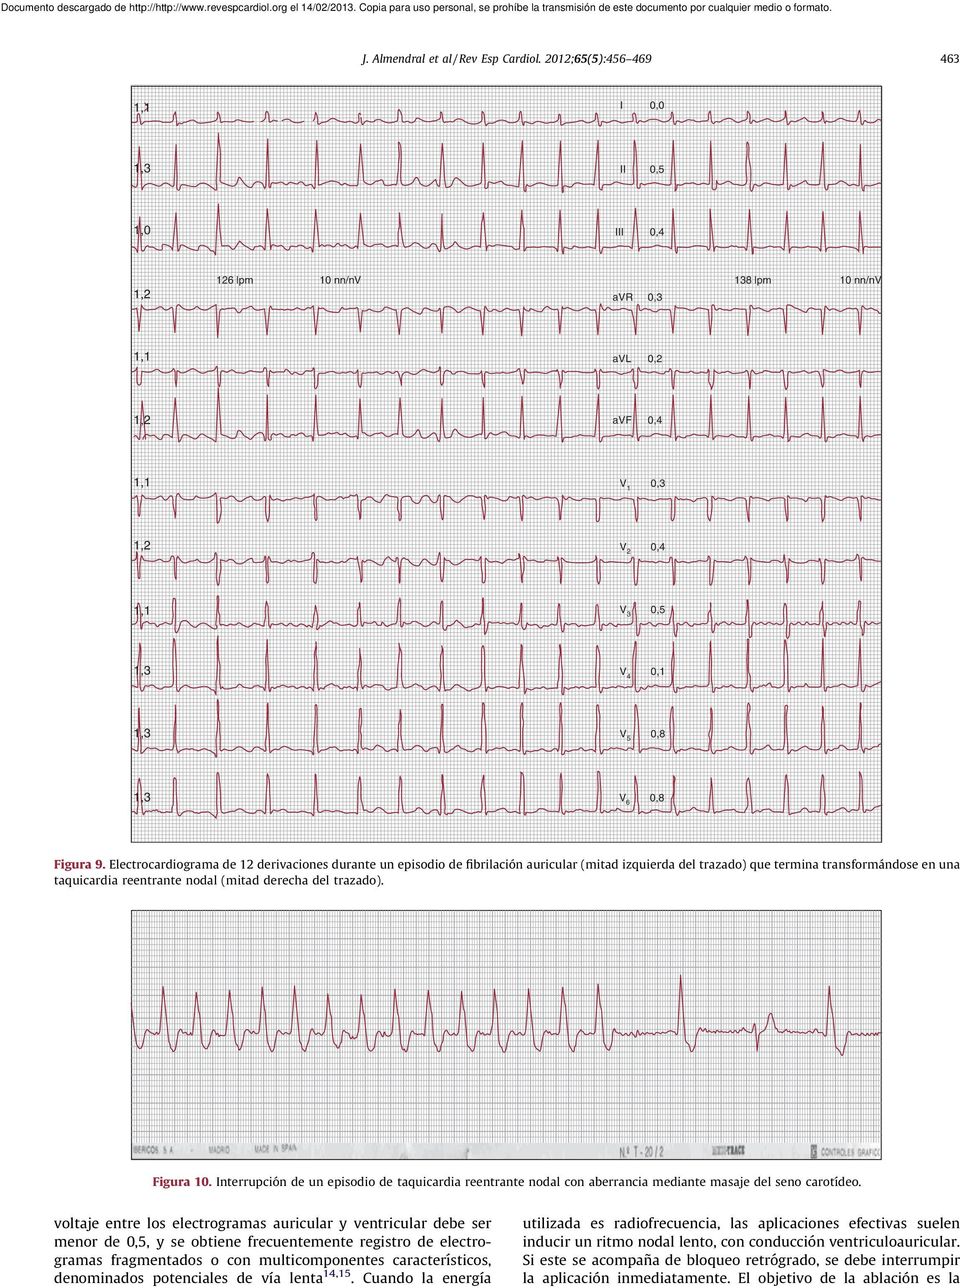 Electrocardiograma de 12 derivaciones durante un episodio de fibrilación auricular (mitad izquierda del trazado) que termina transformándose en una taquicardia reentrante nodal (mitad derecha del